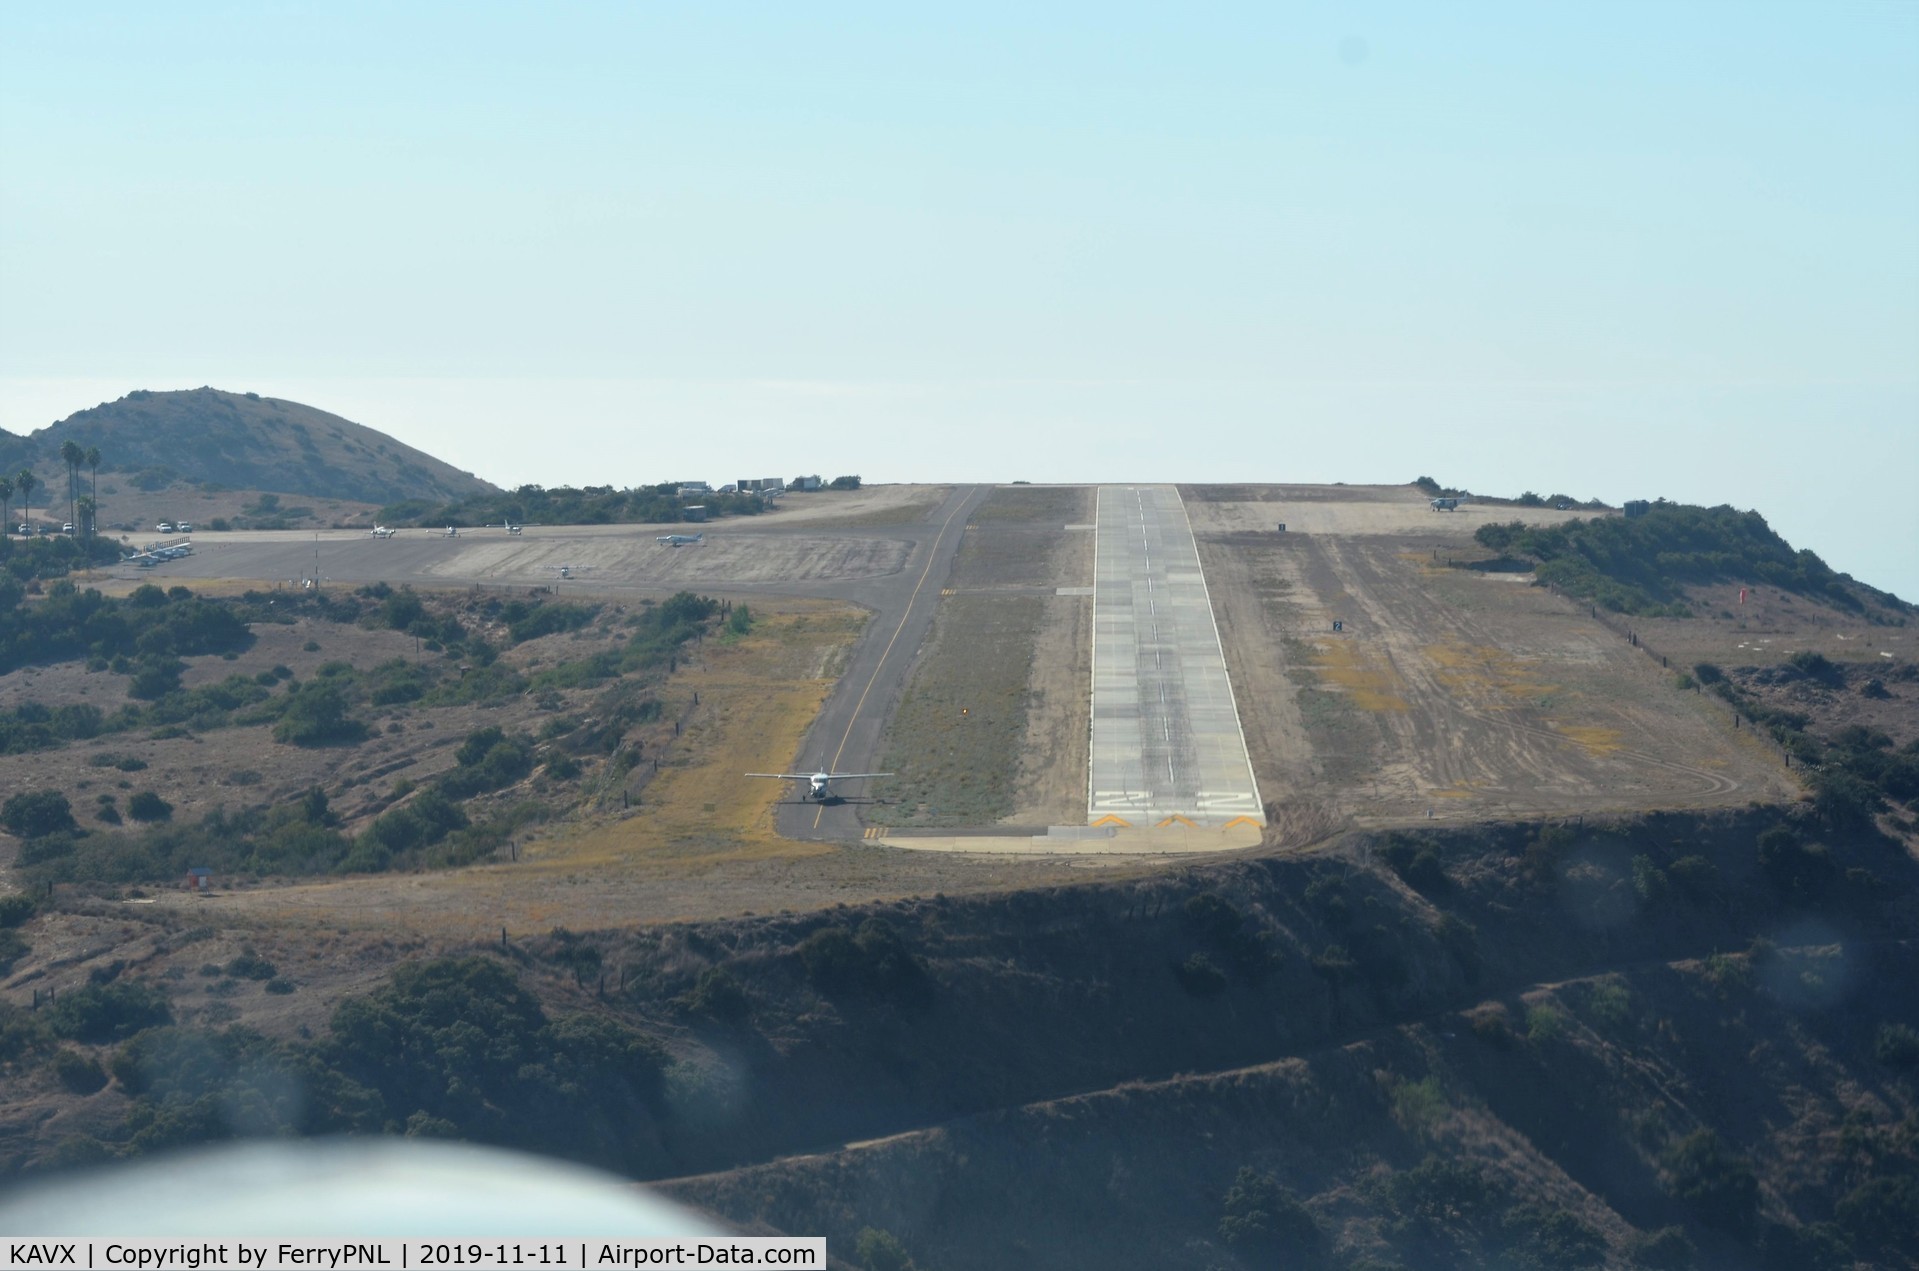 Catalina Airport (AVX) - Final on runway 22 KAVX. Tim told me it resembles a bit of an aircraft carrier flight deck :-). 